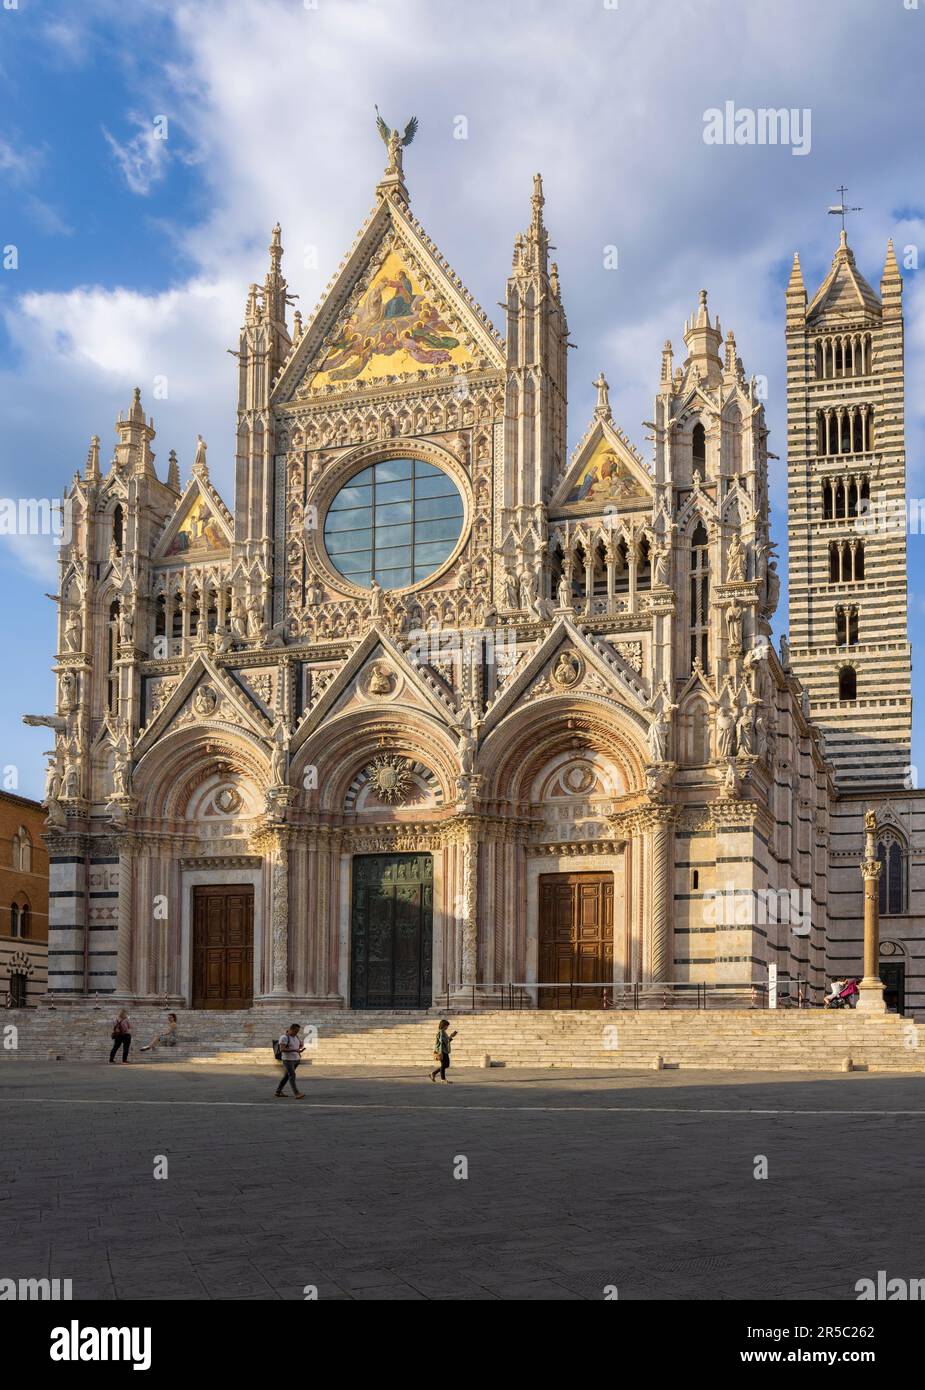 Sienne, province de Sienne, Toscane, Italie. Le duomo roman-gothique, ou cathédrale, construit au 13th siècle. Cathédrale métropolitaine de Saint Mary of Banque D'Images